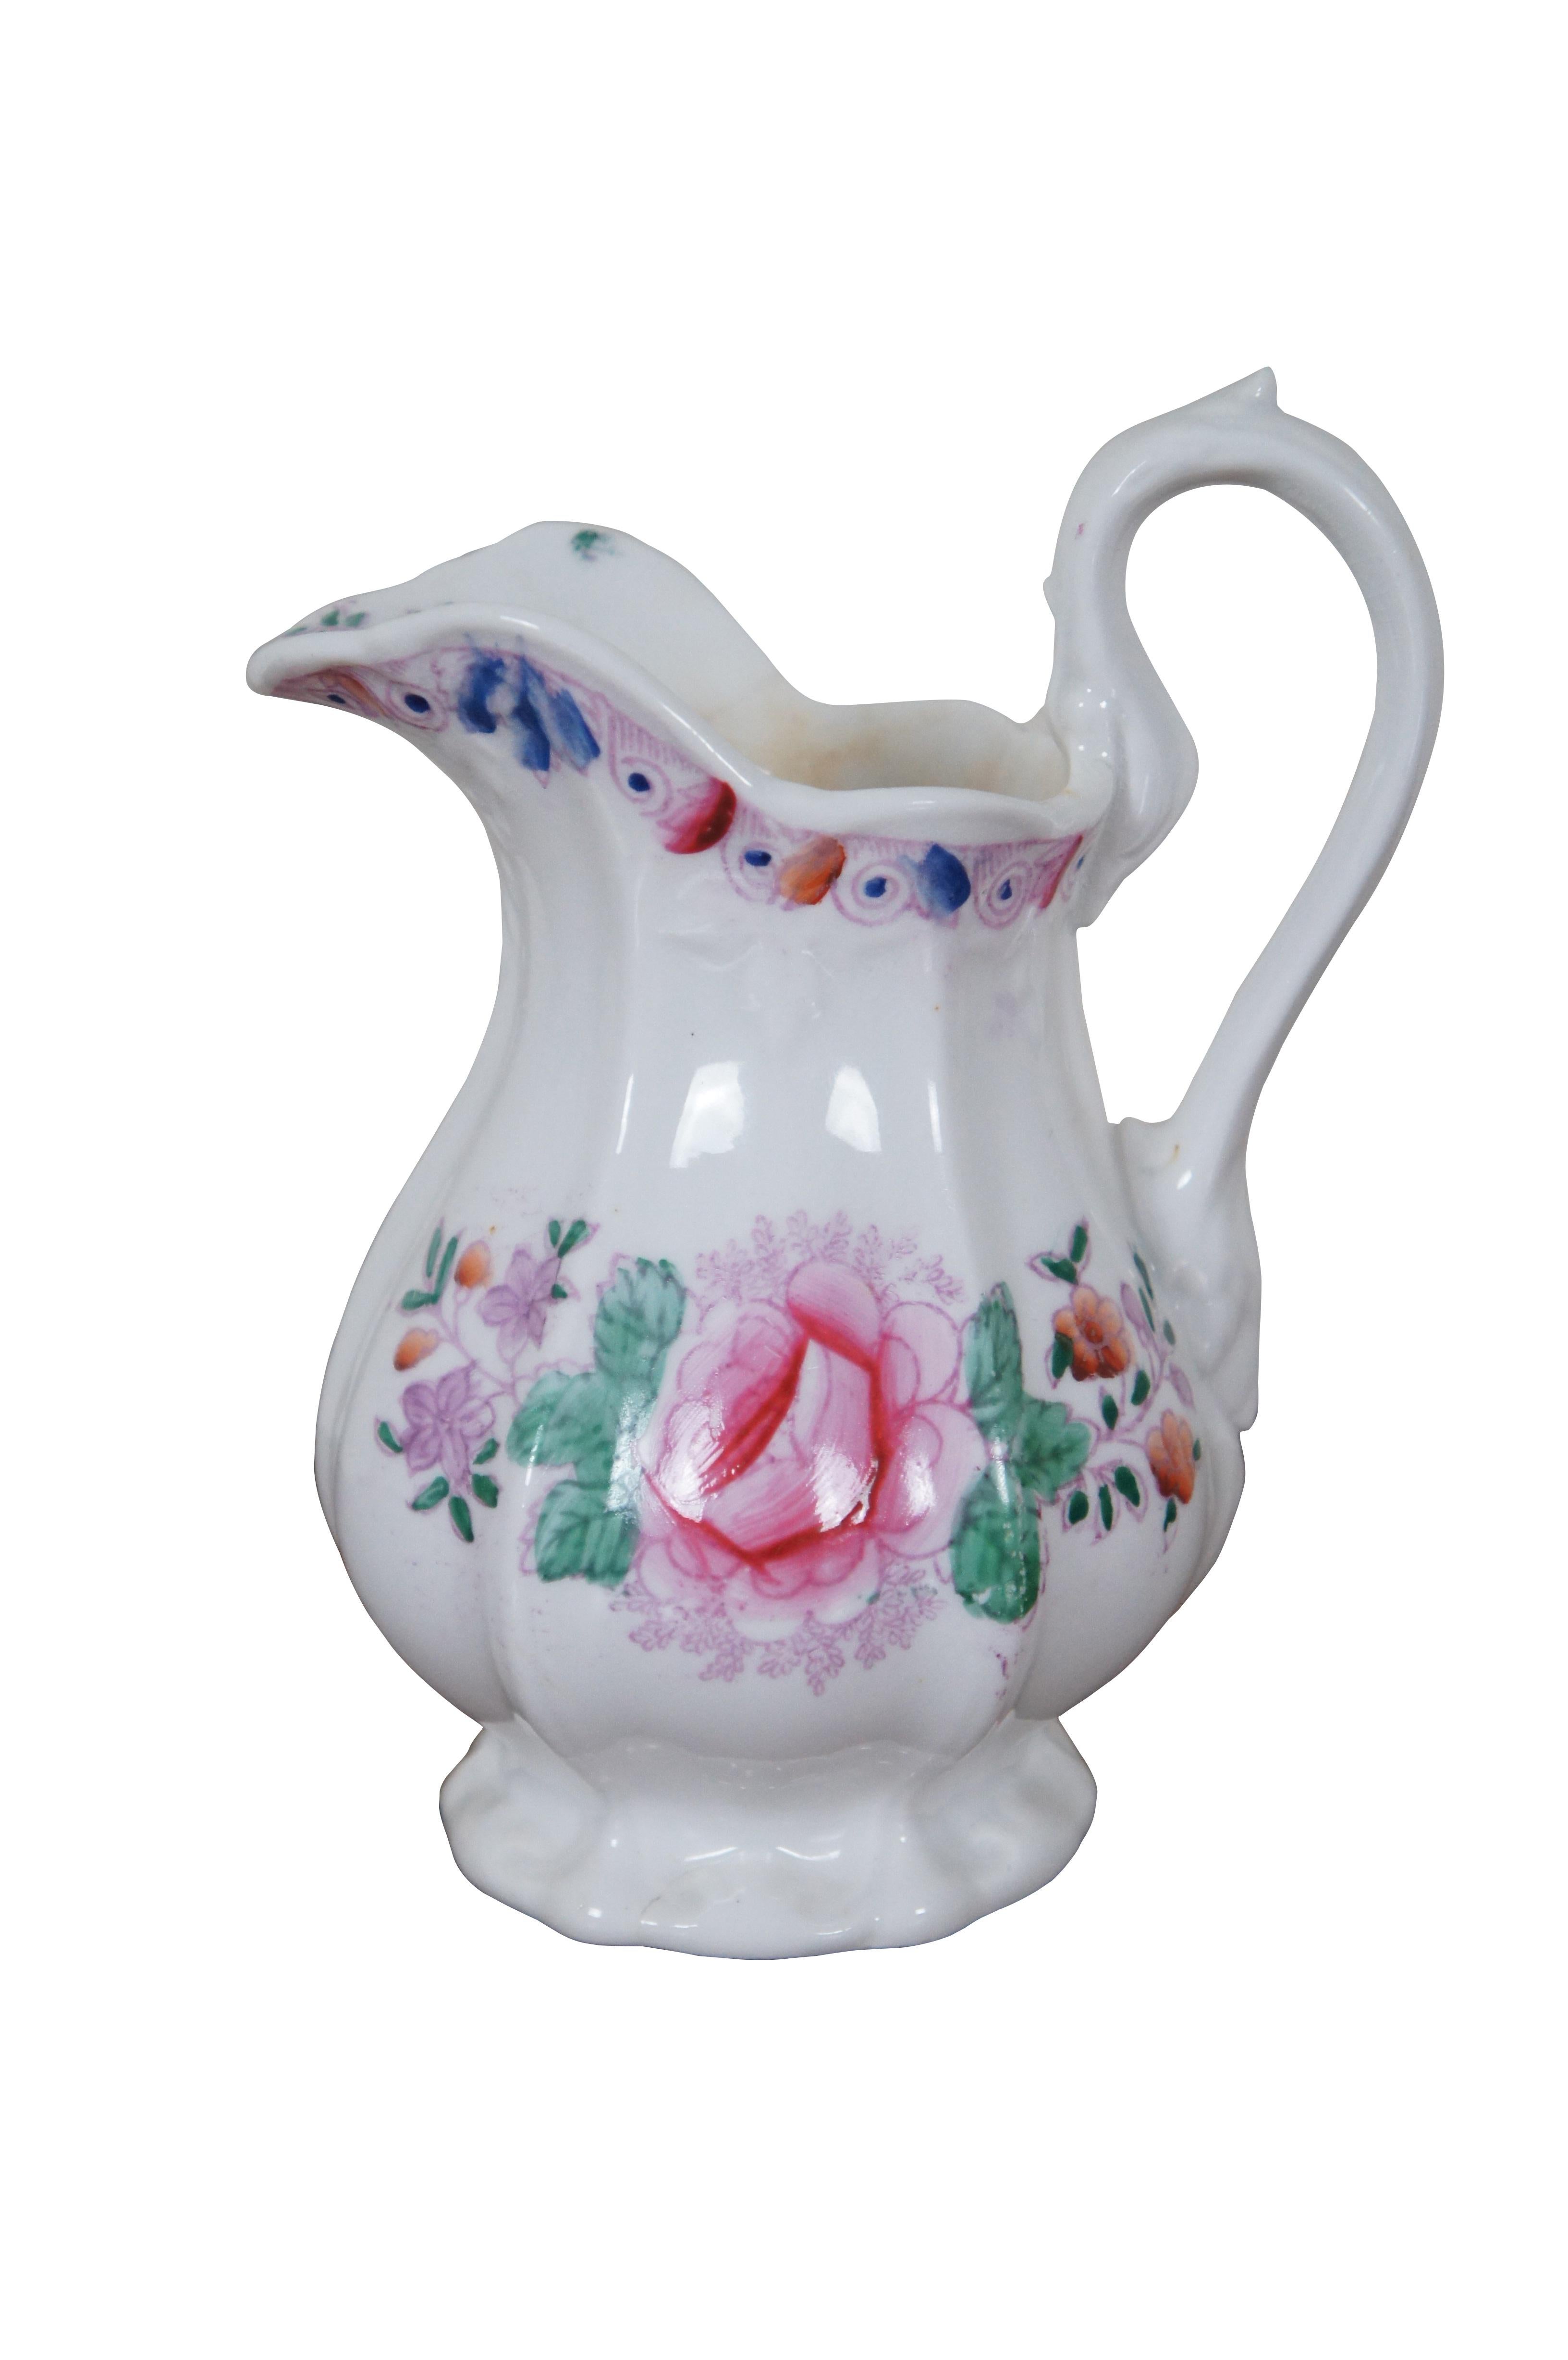 Antiker Porzellan-Tee-/Kaffeekrug & Tasse mit Blumenmuster und Vogelmotiv aus Porzellan

ABMESSUNGEN
Krug - 5